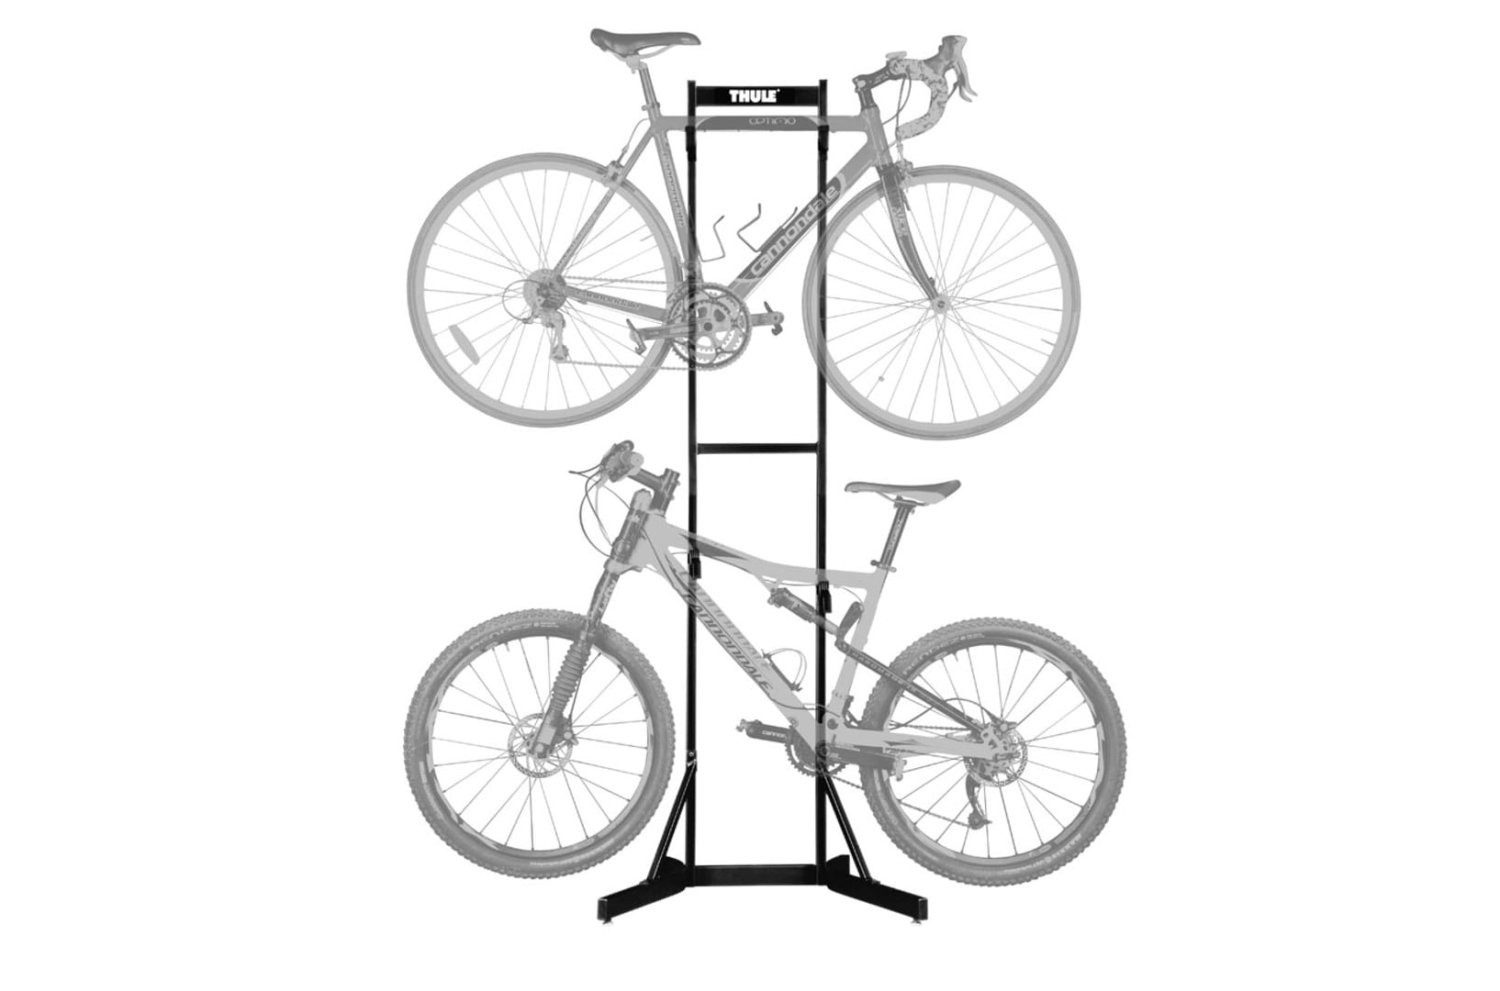 Стойка для хранения 2-х велосипедов Thule Bike Stacker, 5781 стойка для ремонта велосипедов bbb multimount btl 60